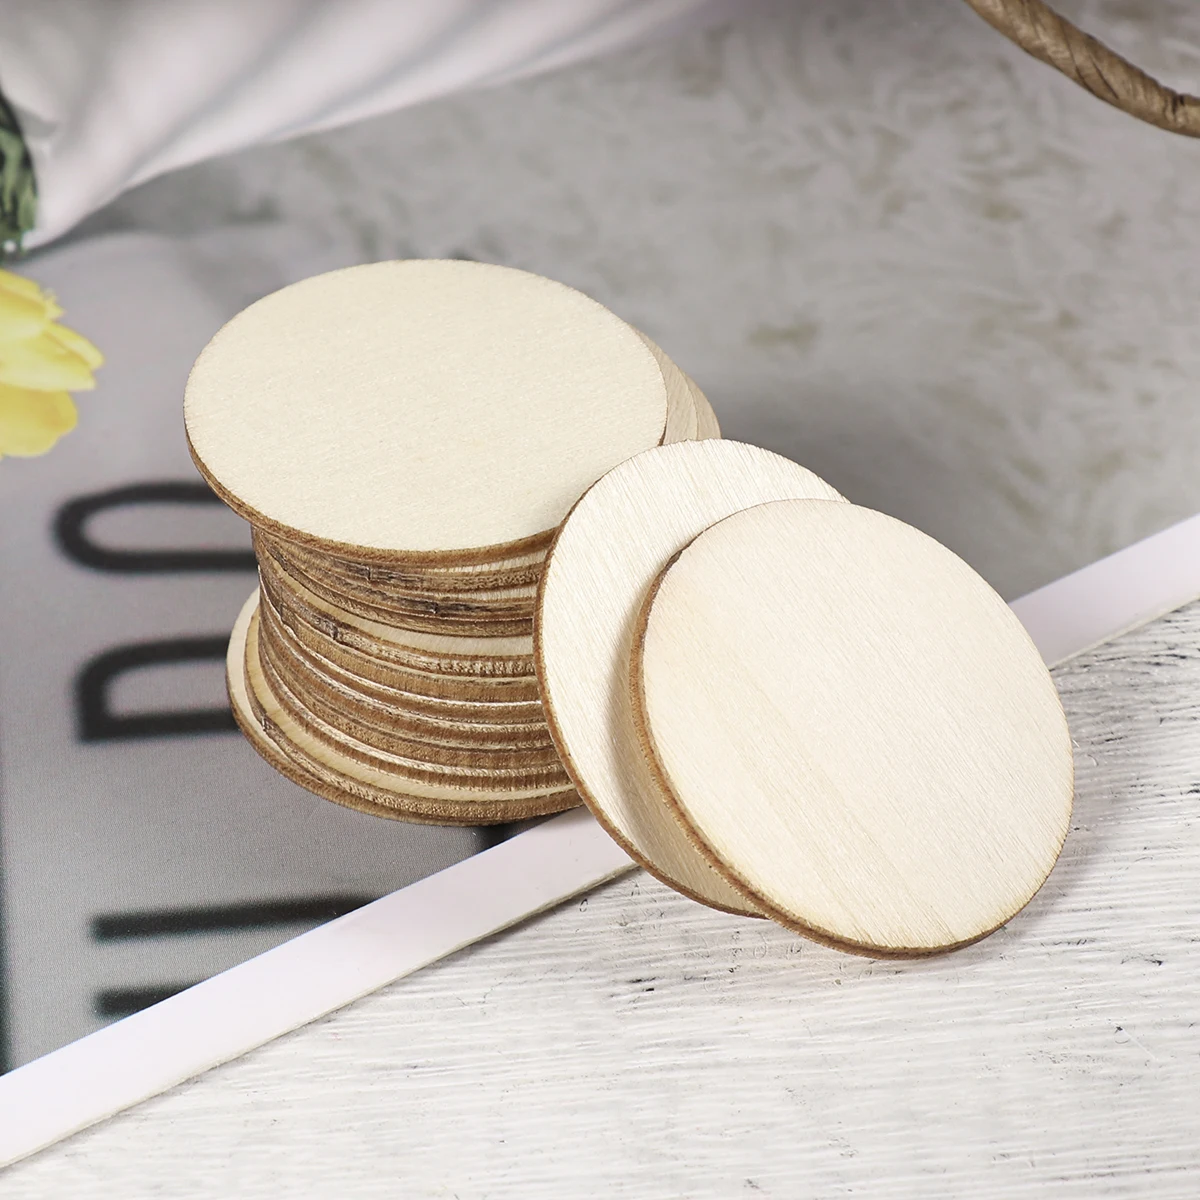 WINOMO, 100 шт, круглые деревянные диски, натуральные круглые деревянные ломтики, необработанные деревянные детали для рукоделия, художественный проект